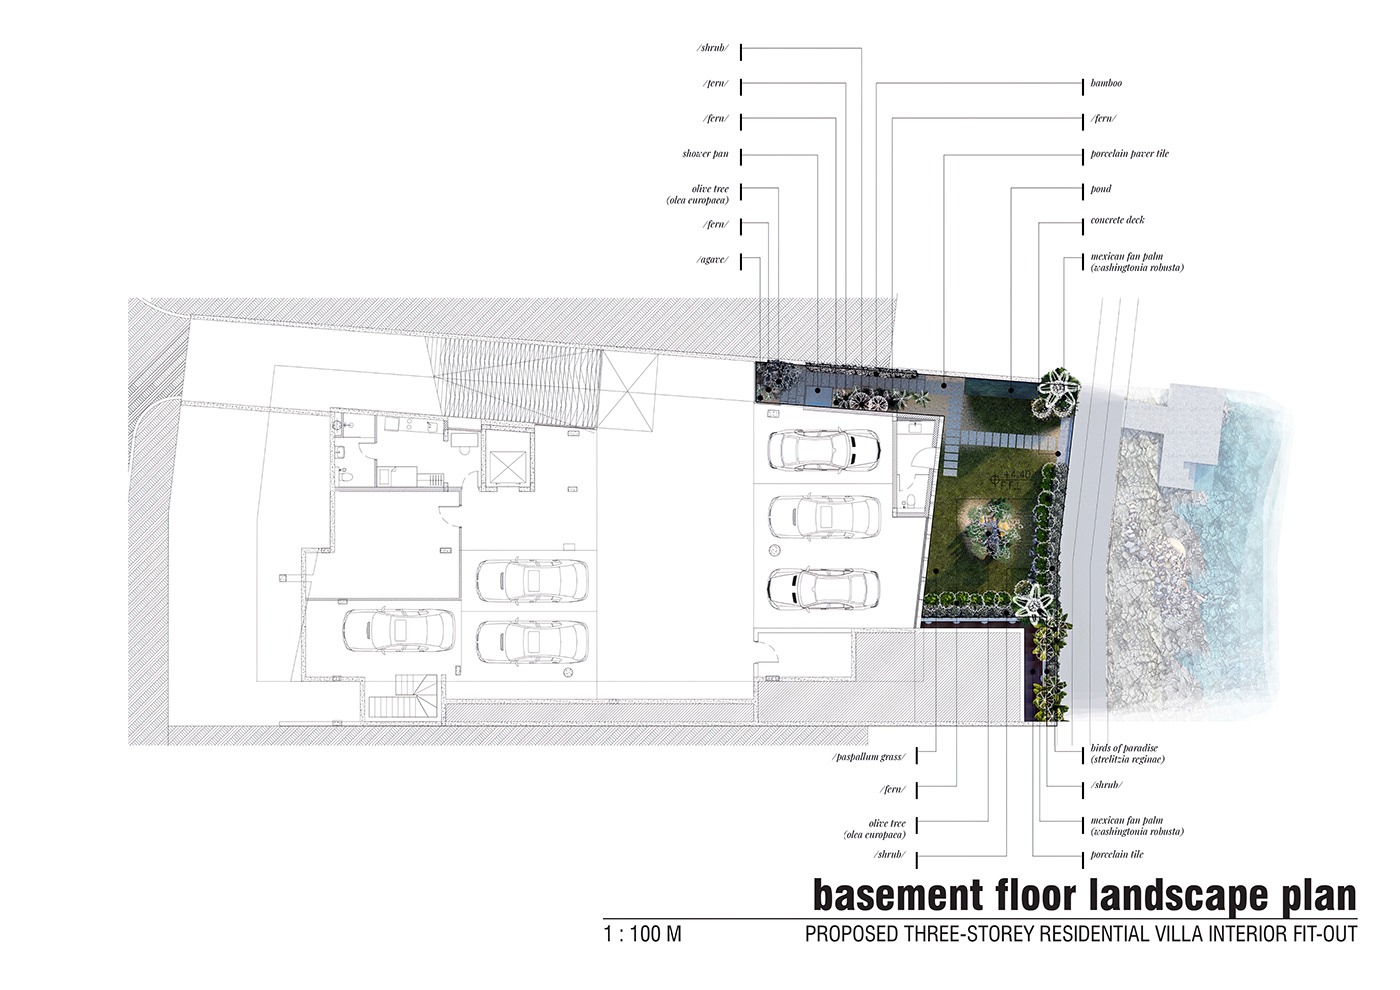 Landscape landscape plan design Render rendering lumion InDesign Layout jetty